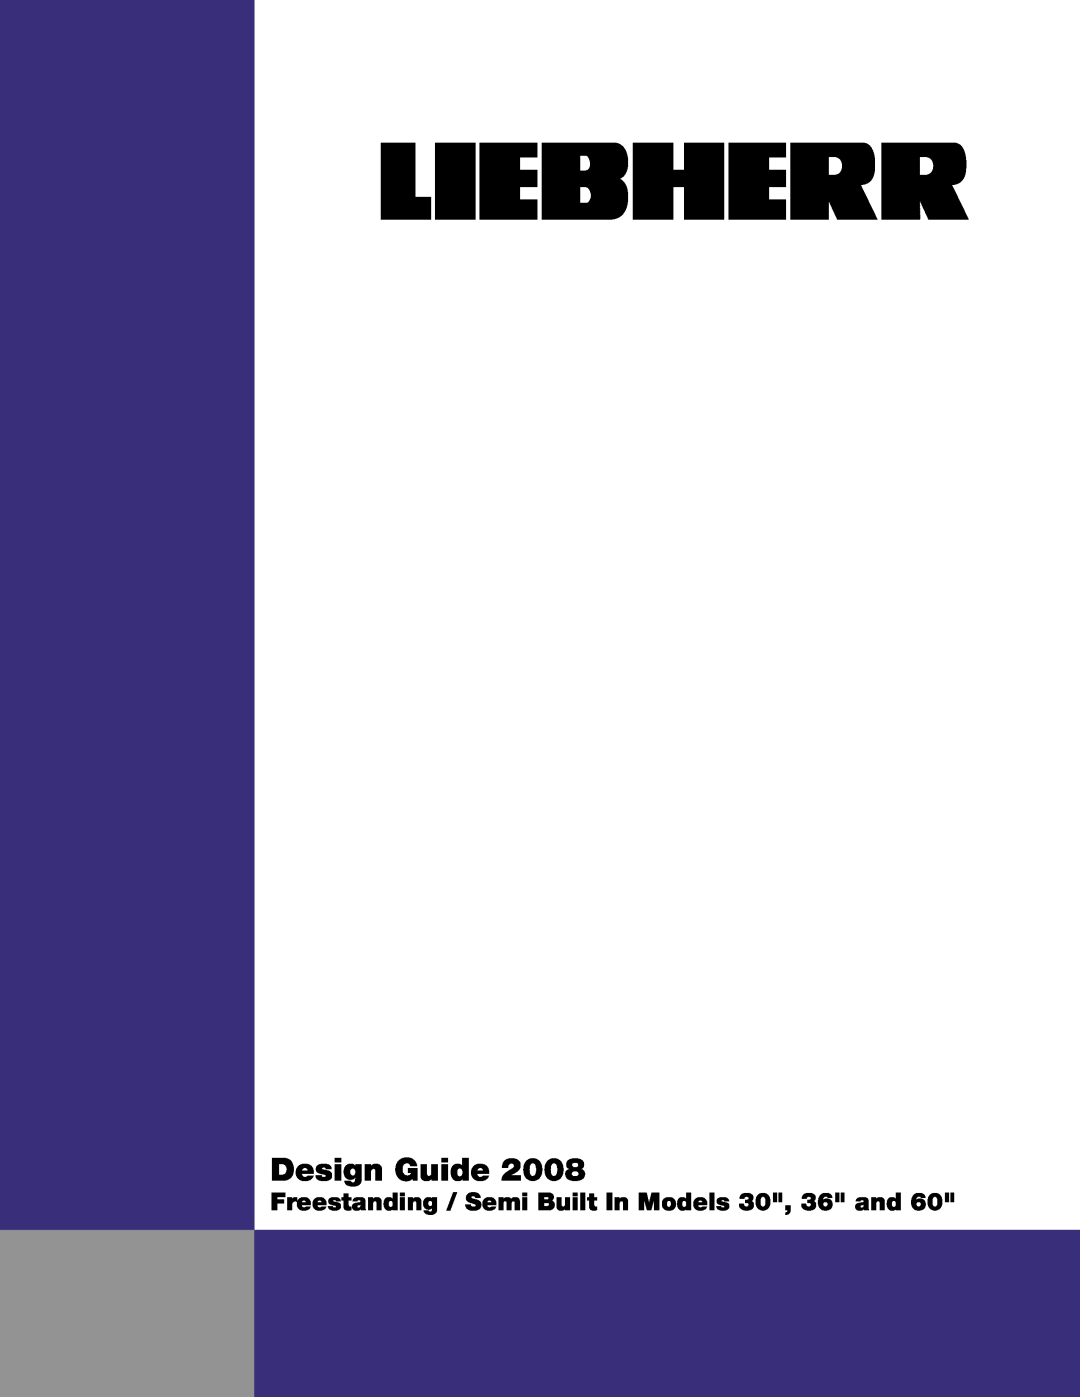 Liebherr CS 1650, SBS 32S0, CS 1601 manual Design Guide, Freestanding / Semi Built In Models 30, 36 and 